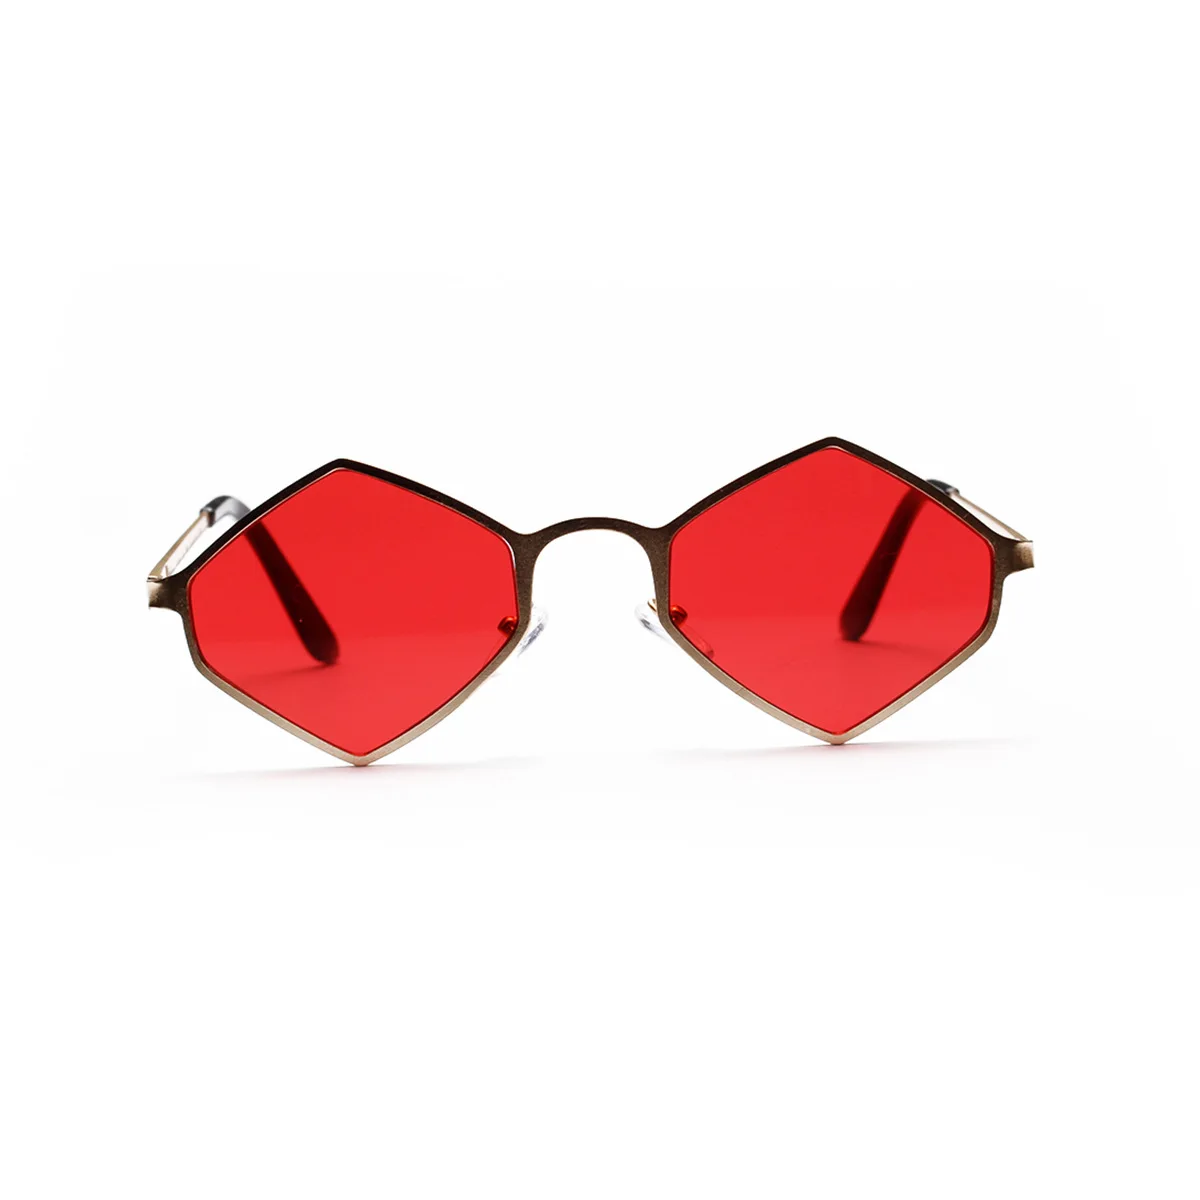 Red Son fashion small frame glasses polygon retro color sunglasses female new brand fashion designer sunglasses ladies UV40